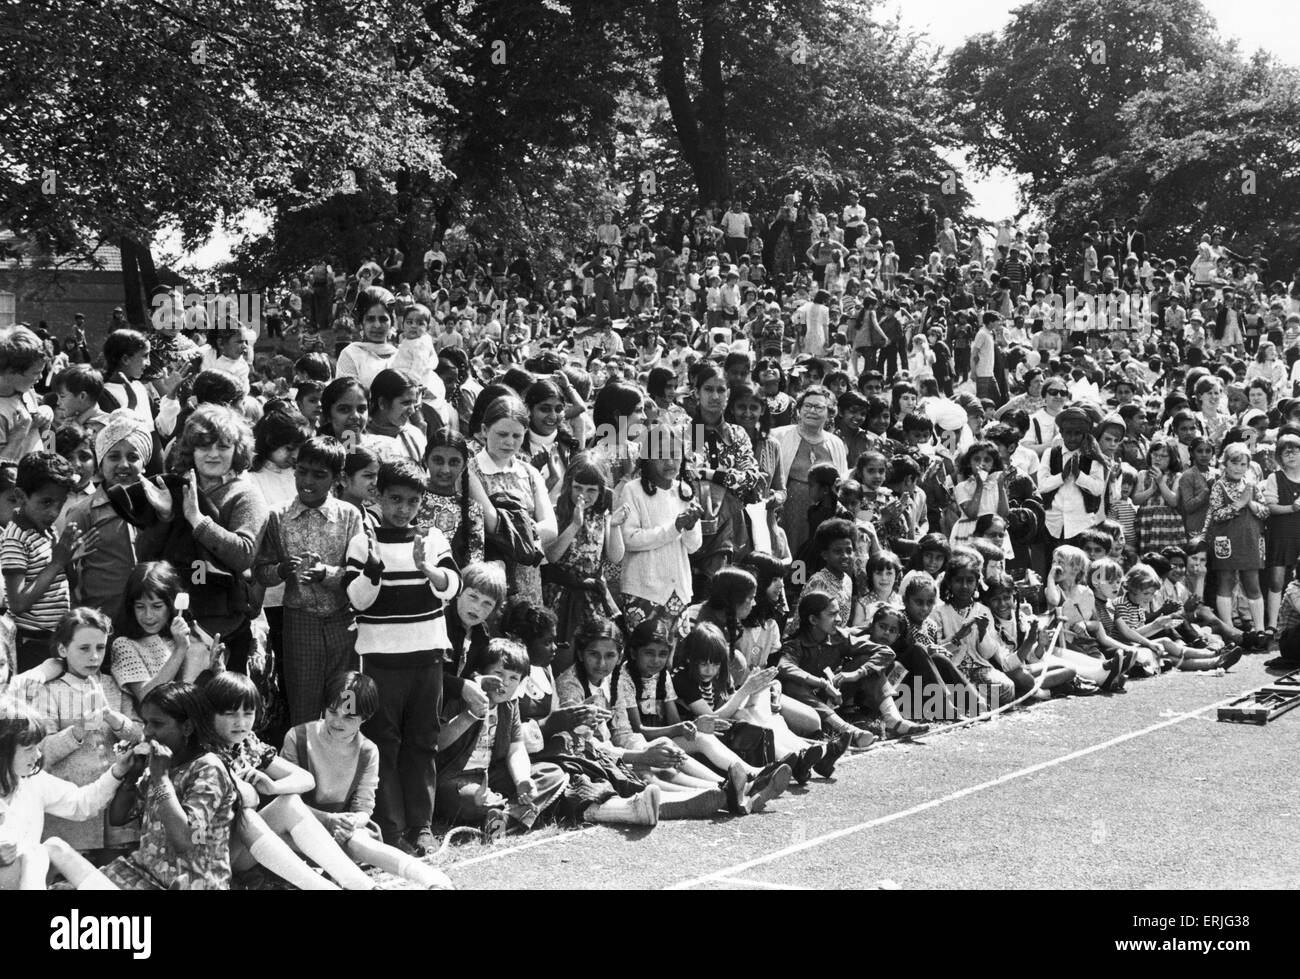 Kinder jeden Alters und jeder Herkunft säumen den Weg des 1973 Hillfields Karnevals. 8. Juni 1973 Stockfoto